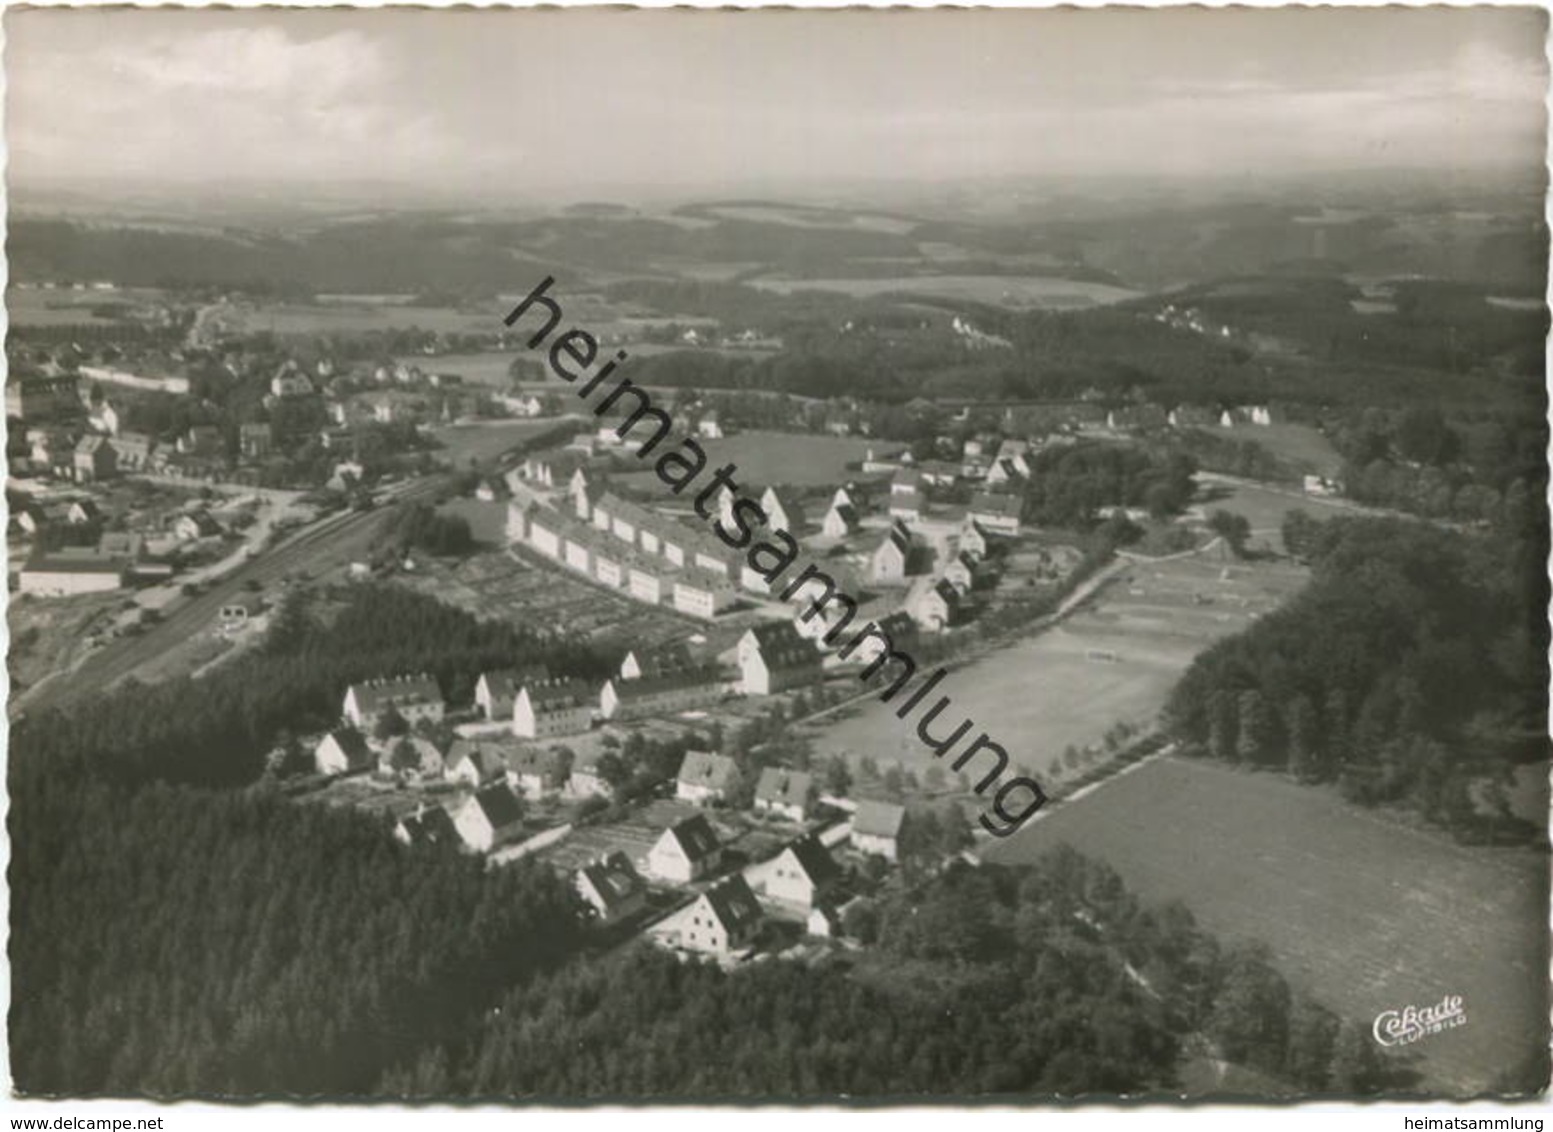 Halver - Luftaufnahme - Foto-AK Grossformat 60er Jahre - Cramers Kunstanstalt Dortmund - Halver